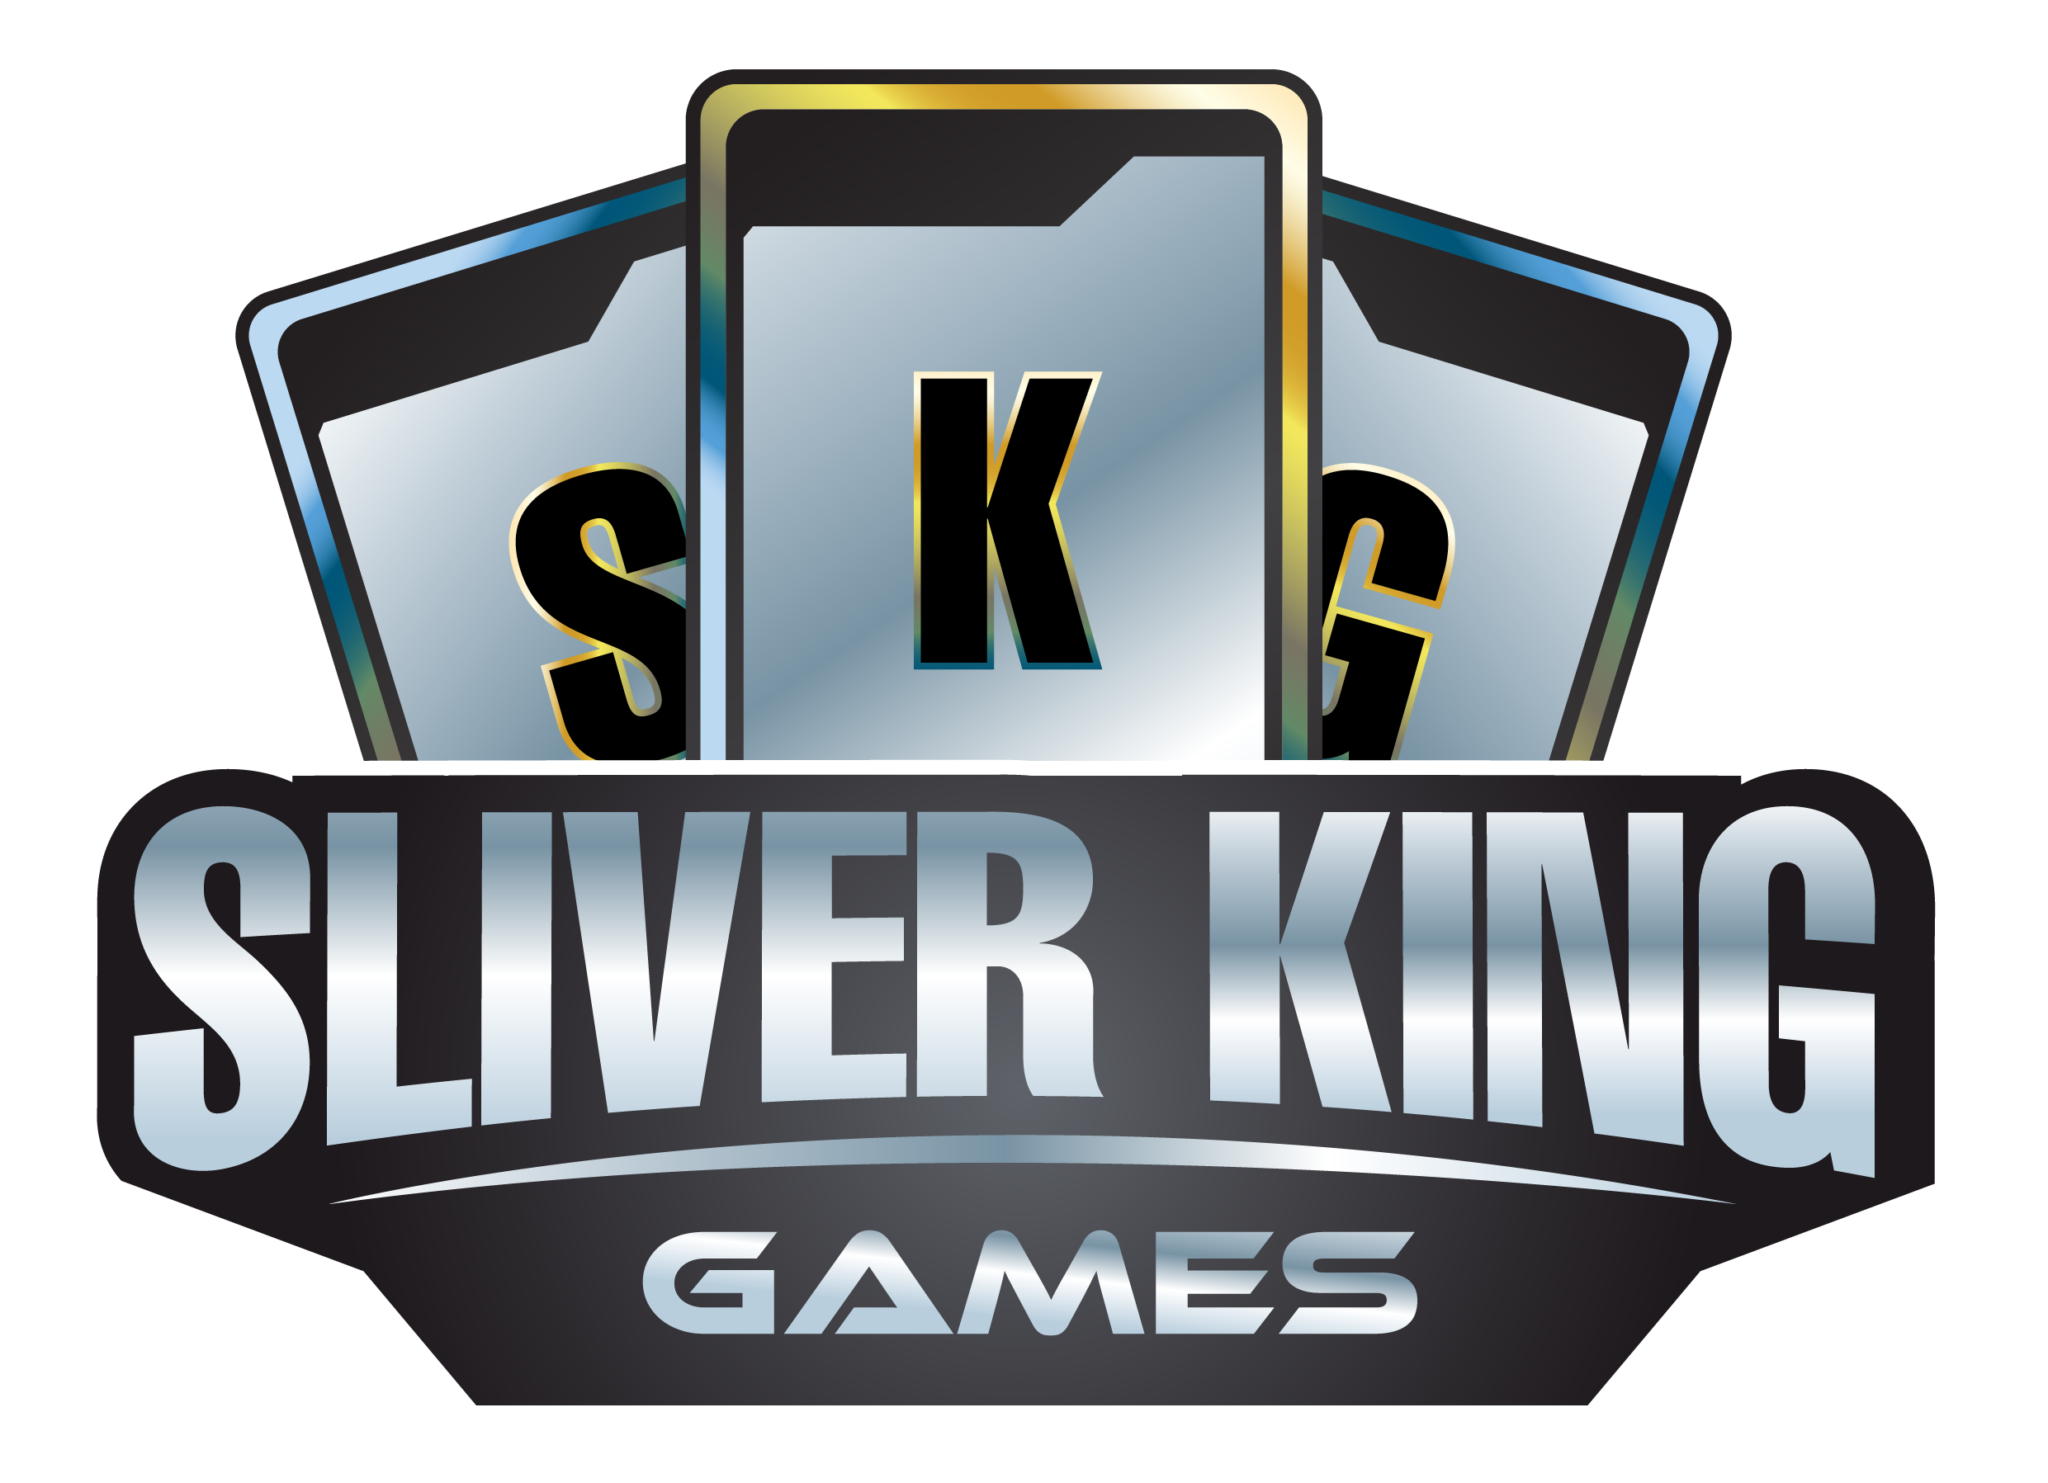 Silver Kings Games, Hastings